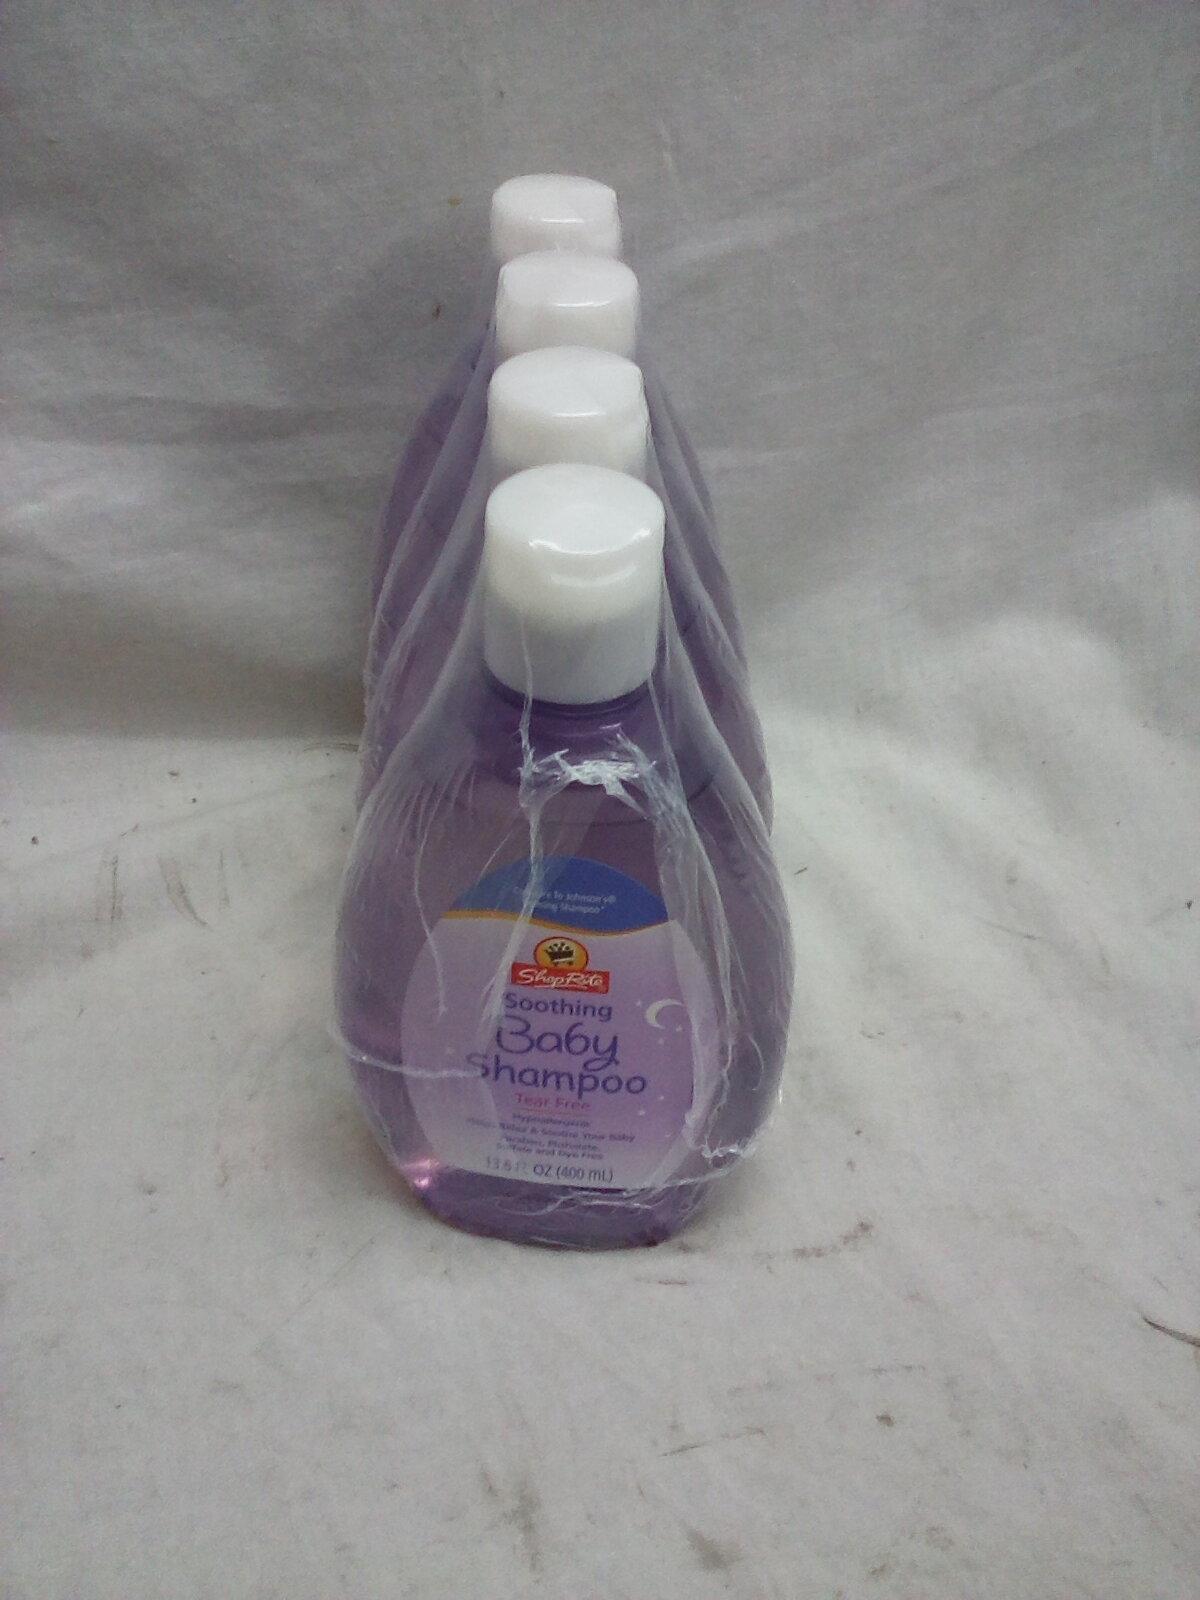 Qty. 4 Bottles Shop Rite No Tears Baby Shampoo 13.6 Oz per bottle